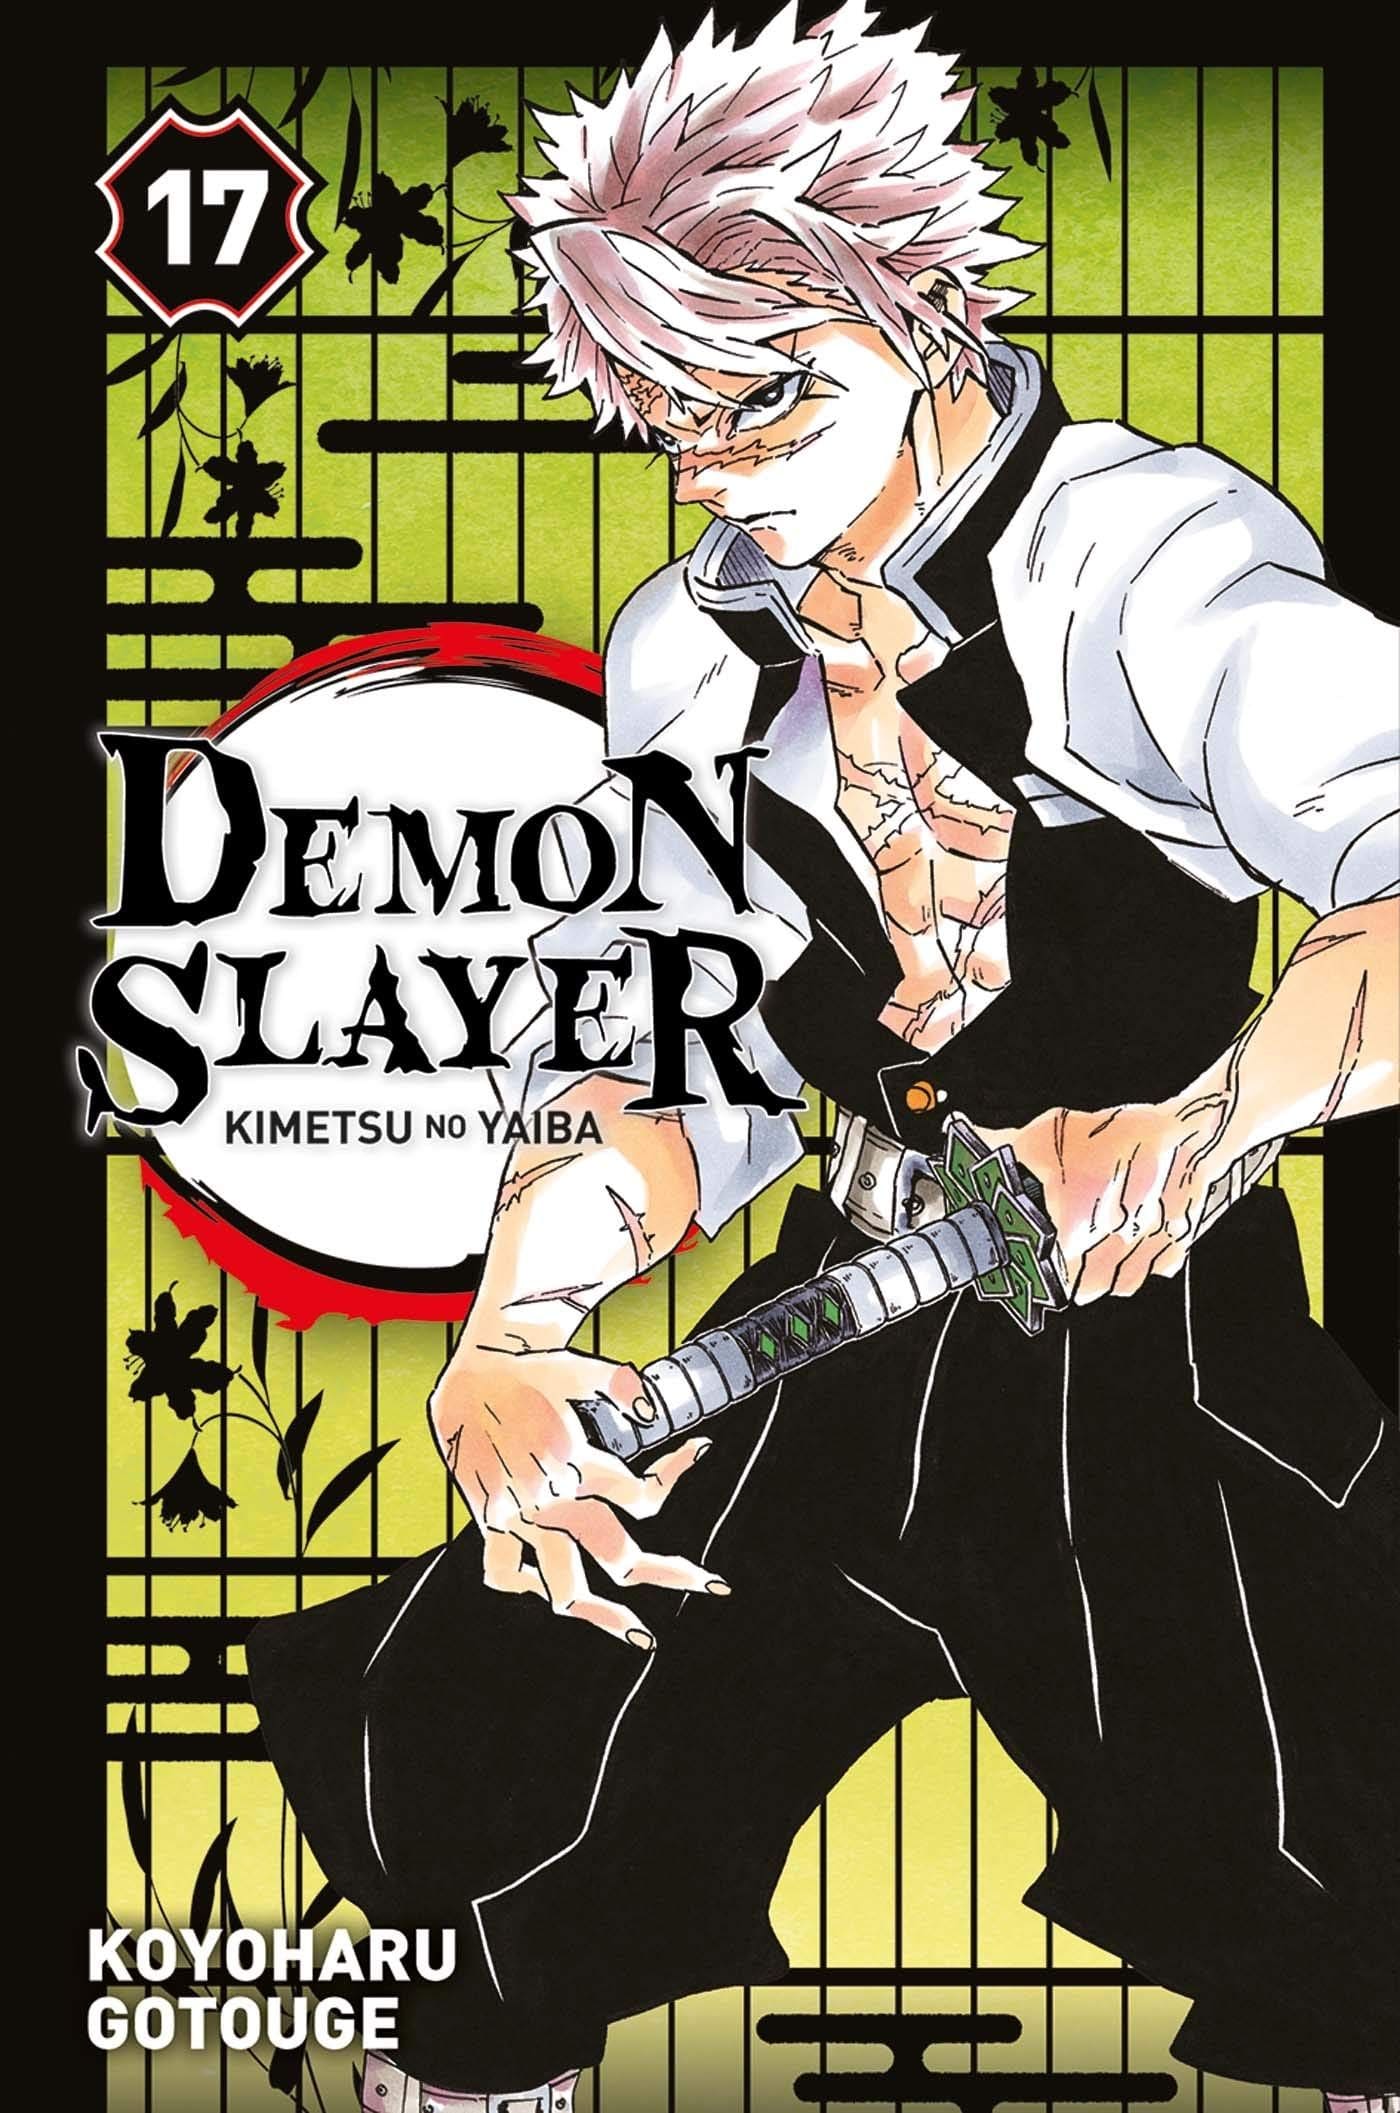 Demon Slayer Mangá Vol. 1 Ao 23 + 5 Volumes Extras - Kimetsu No Yaiba  Coleção Completa